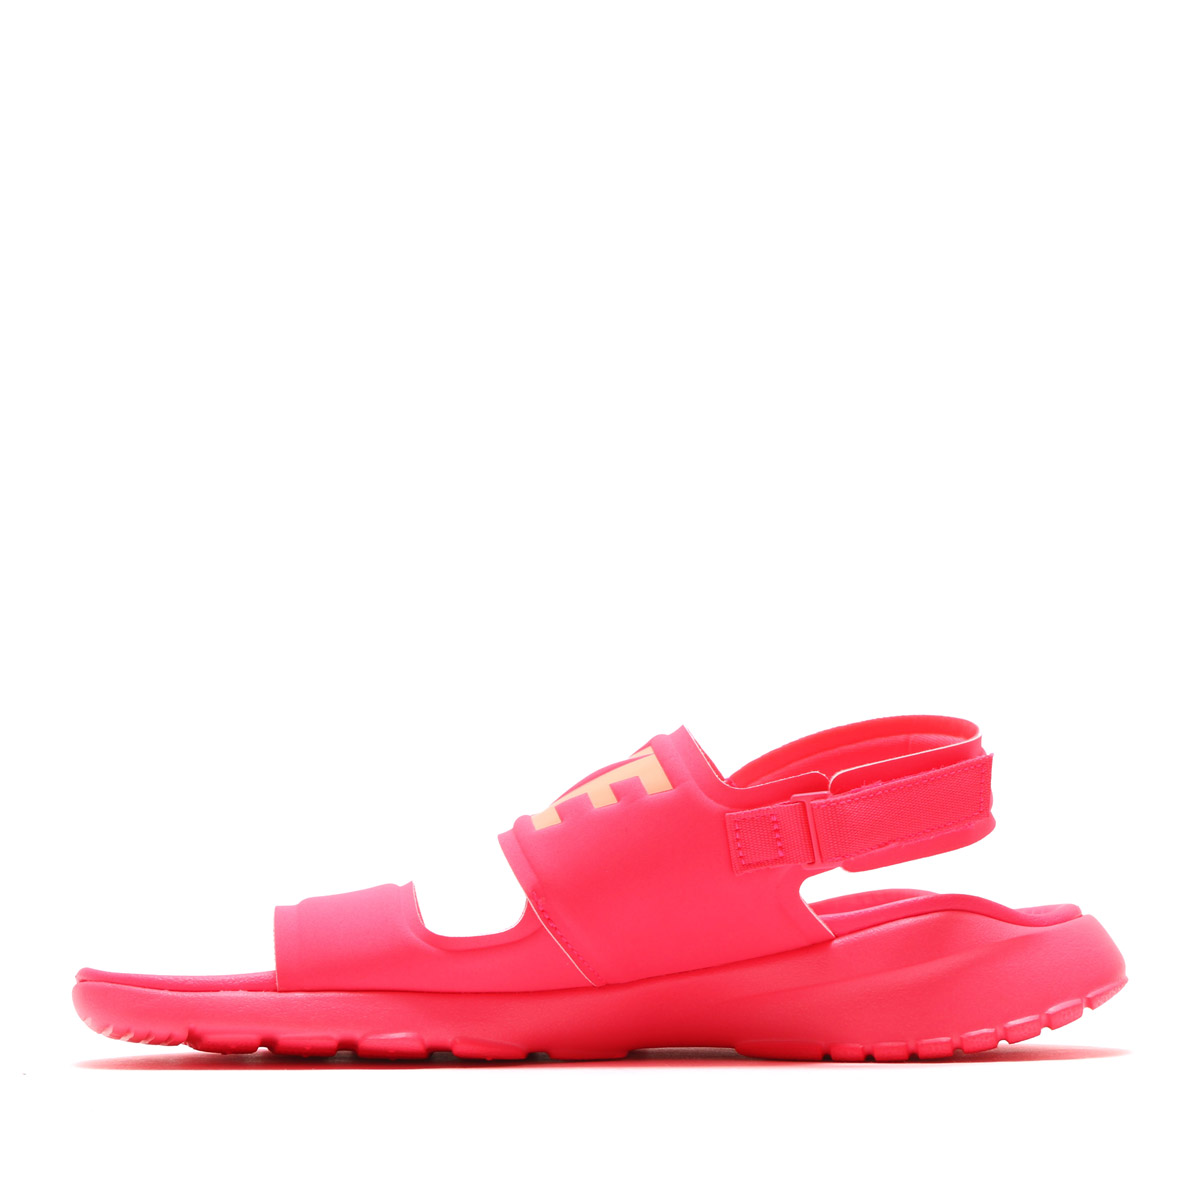 atmos pink | Rakuten Global Market: NIKE WMNS TANJUN SANDAL (Nike women ...